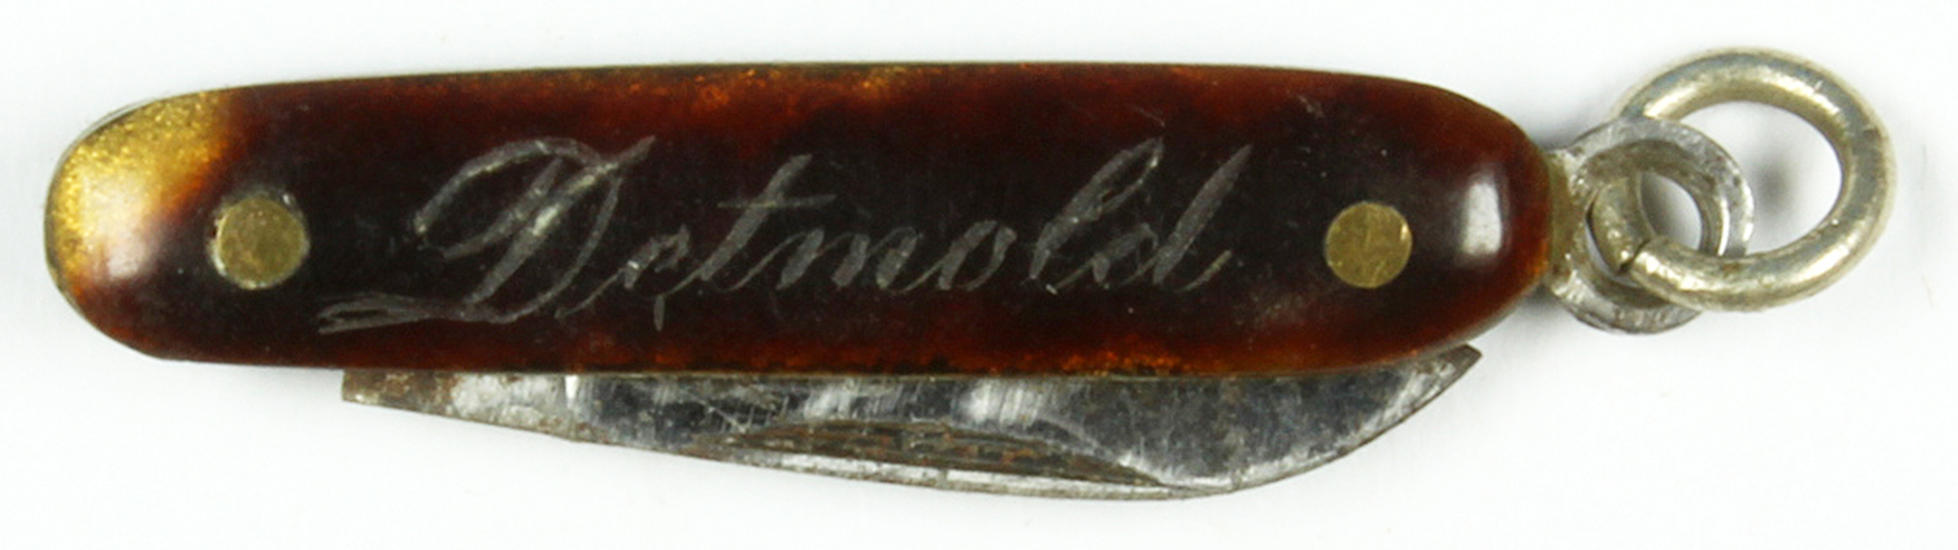 Taschenmesser (Miniatur) mit Grafur "Detmold" (Museum Wolmirstedt RR-F)